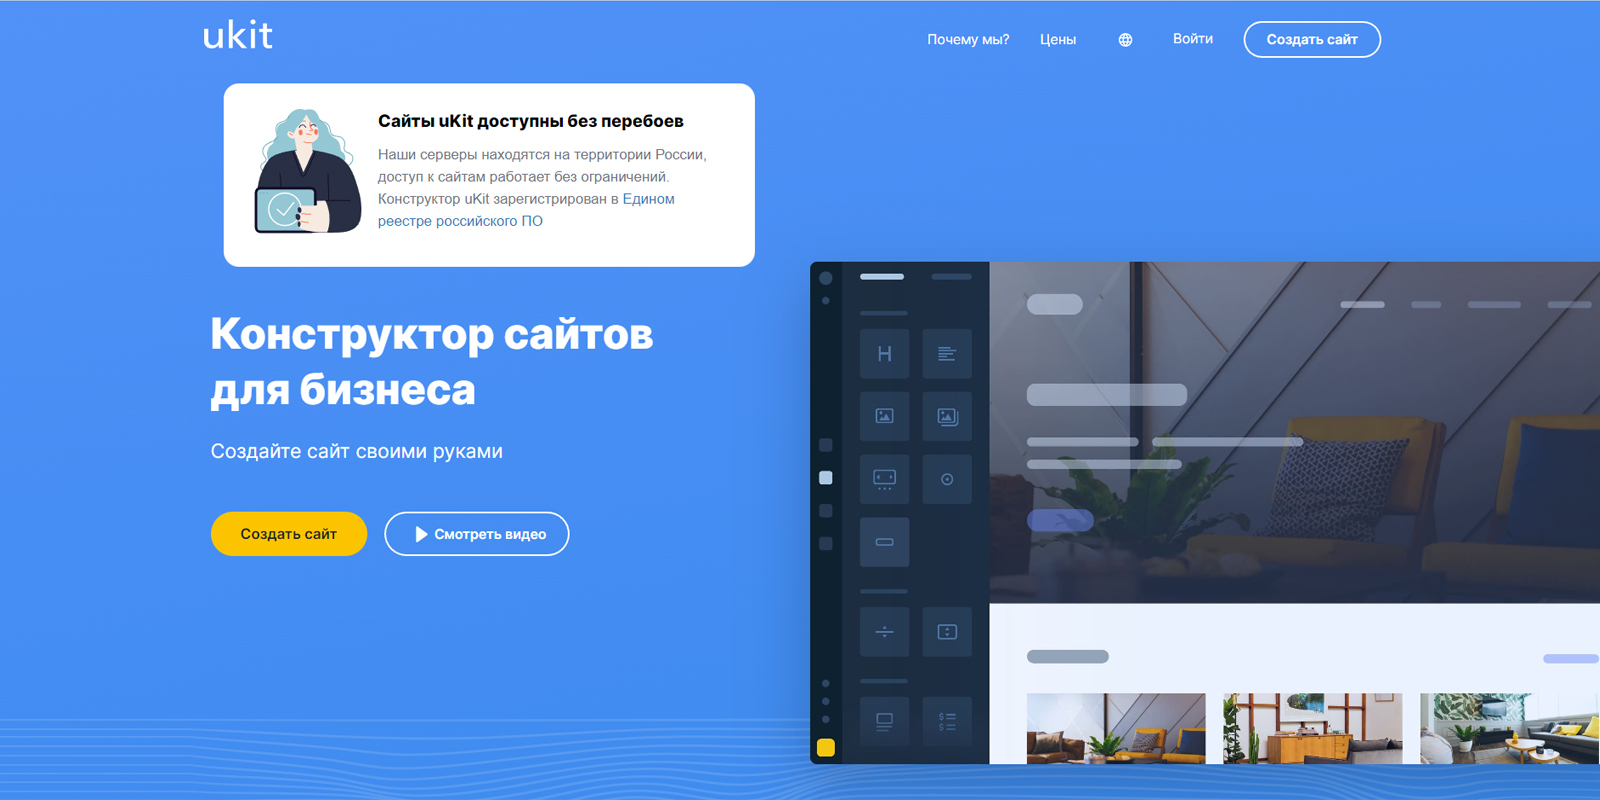 Создание сайта с помощью онлайн конструктора Ucoz